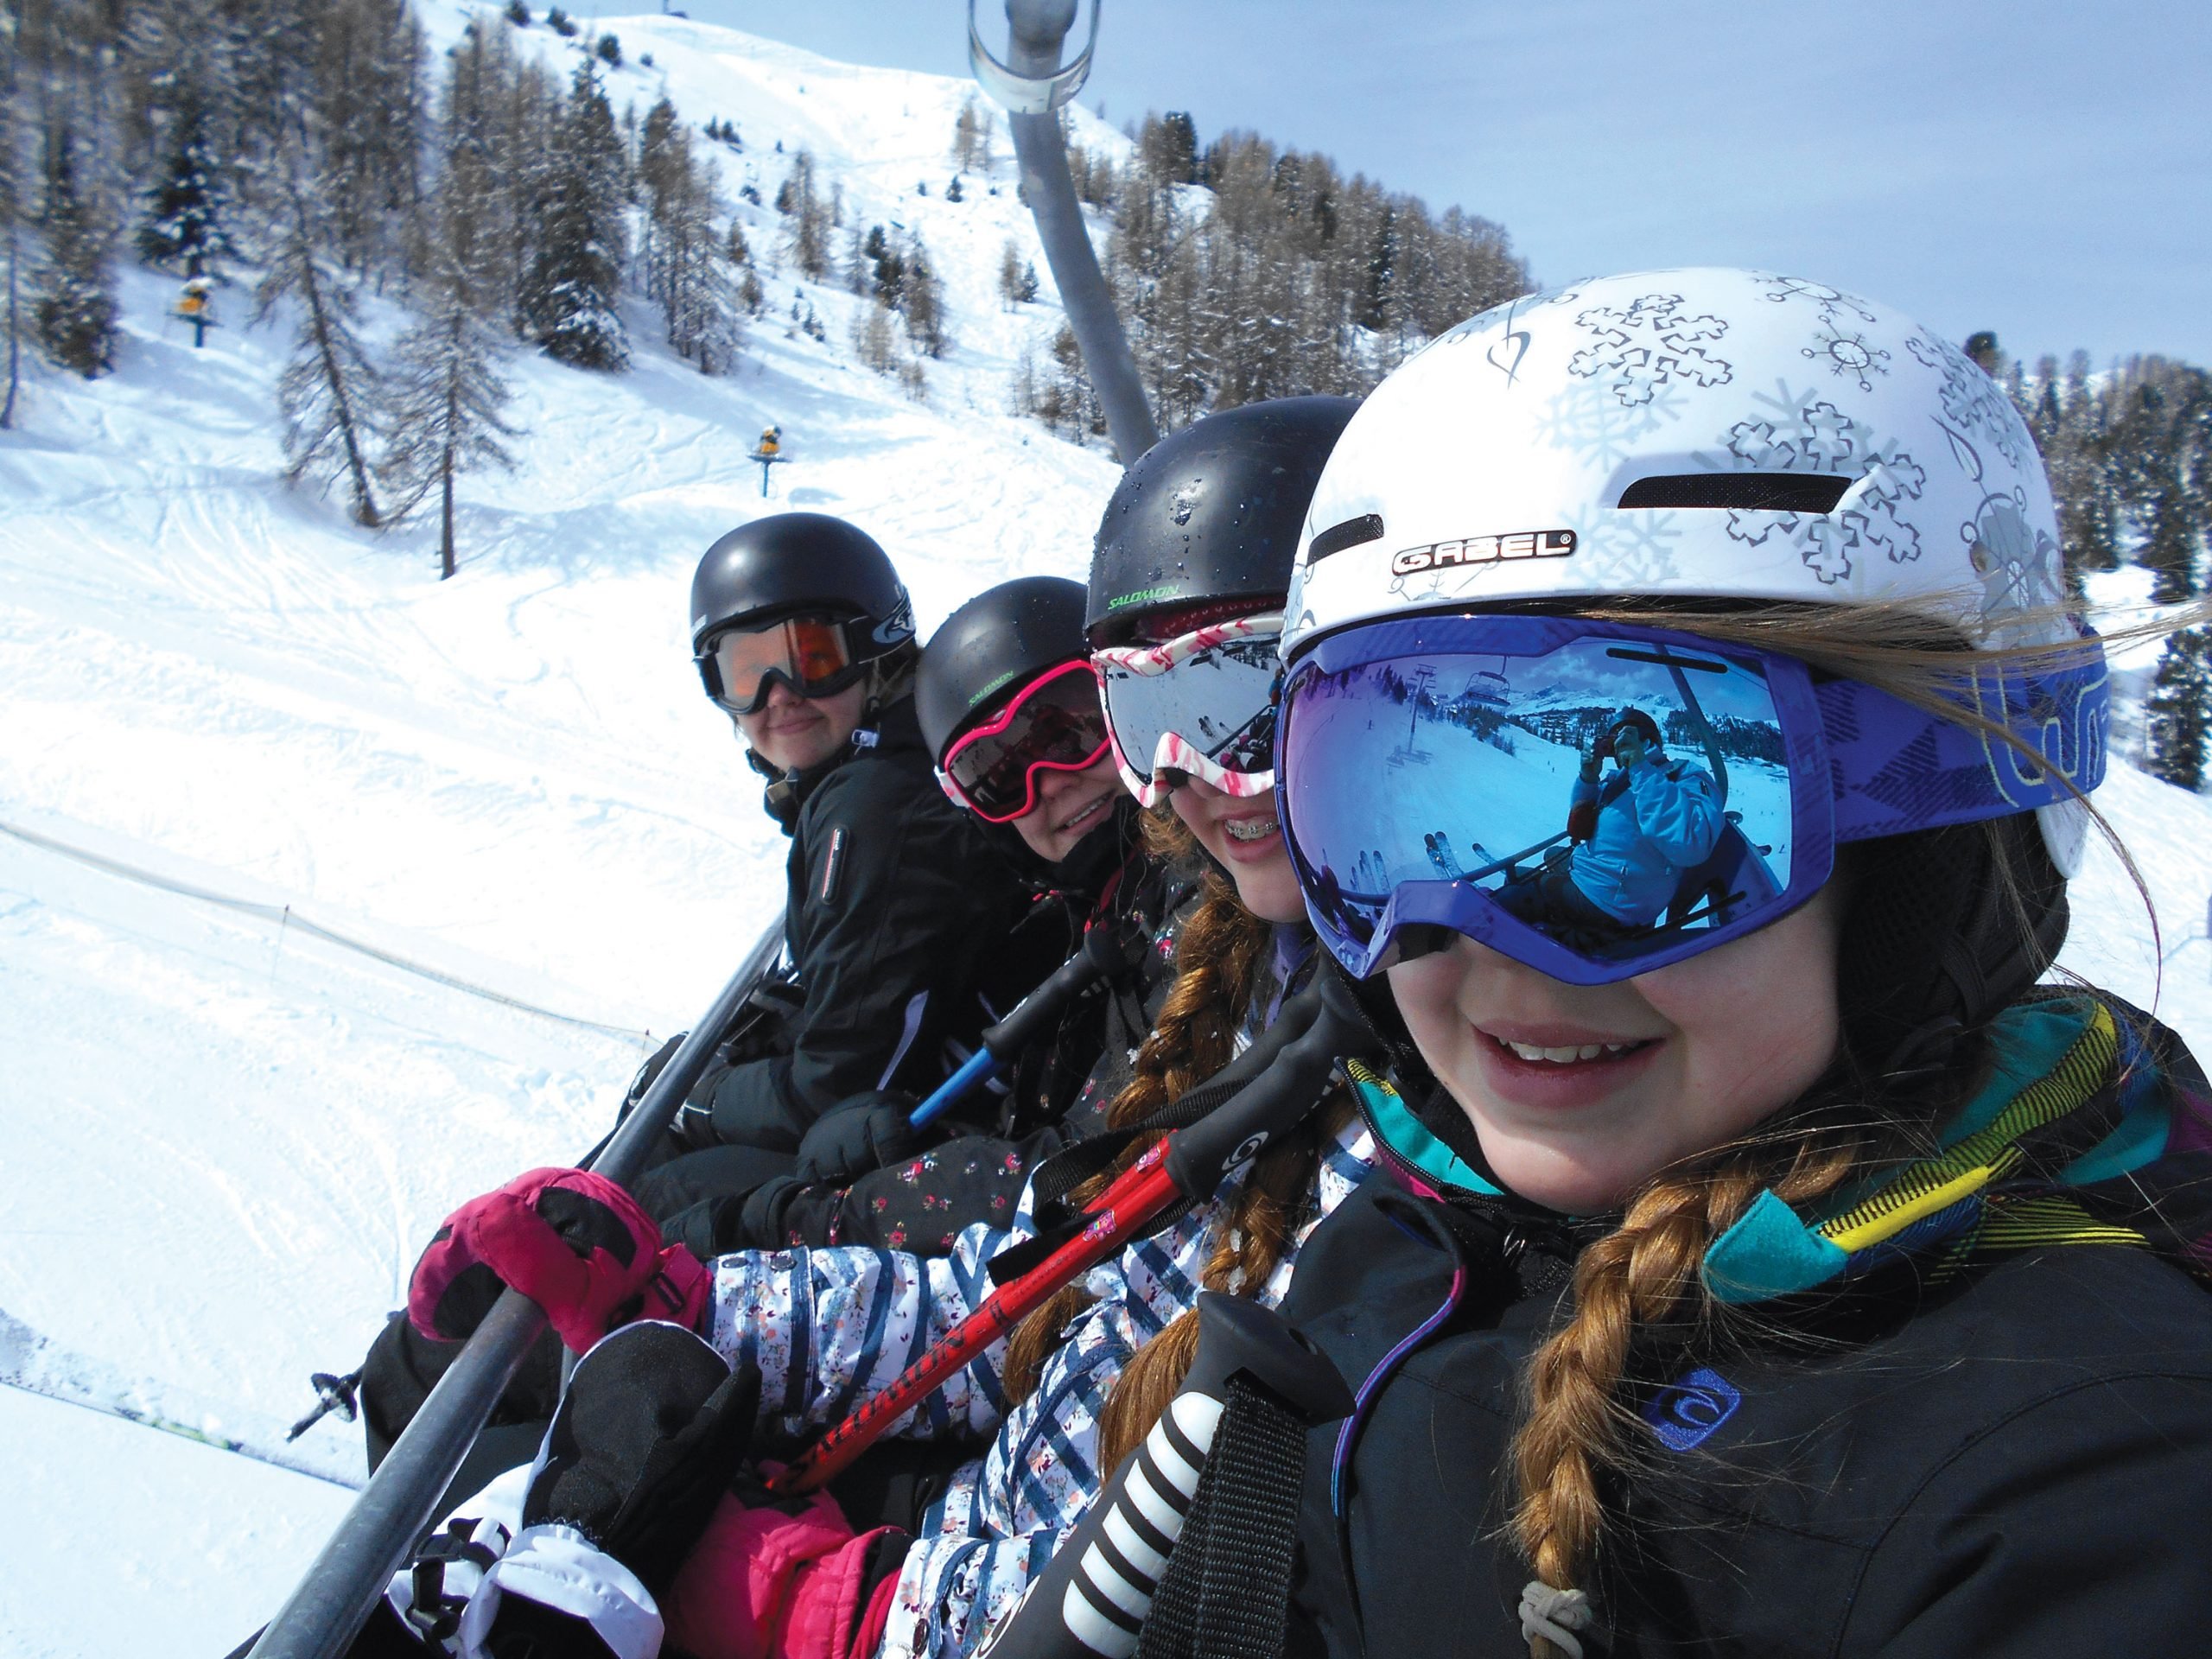 School ski trip students